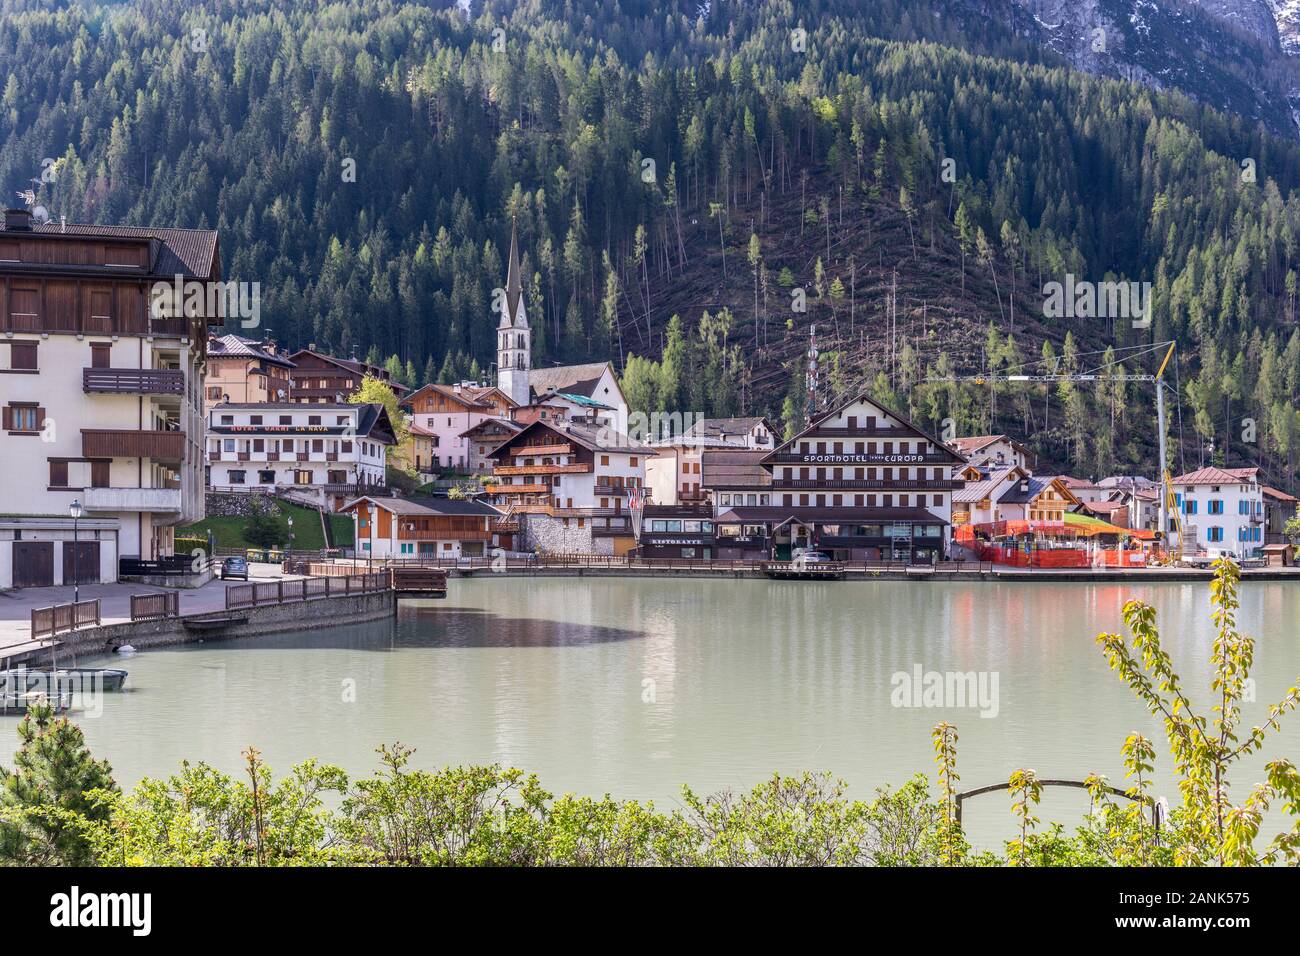 Le lac d'Alleghe et ville, Dolomites, Italie Banque D'Images